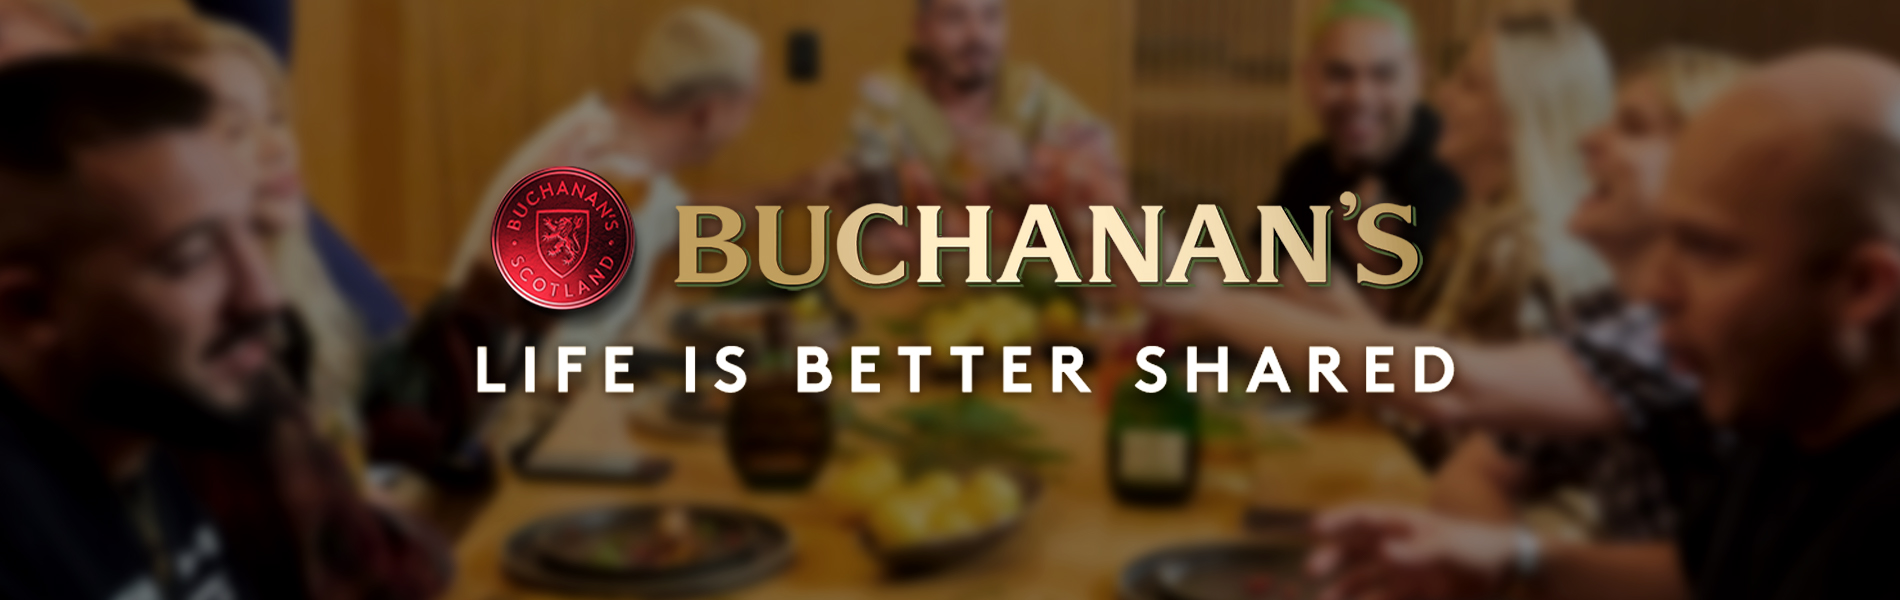 Bottle of Buchanan Whiskey on a dinner table